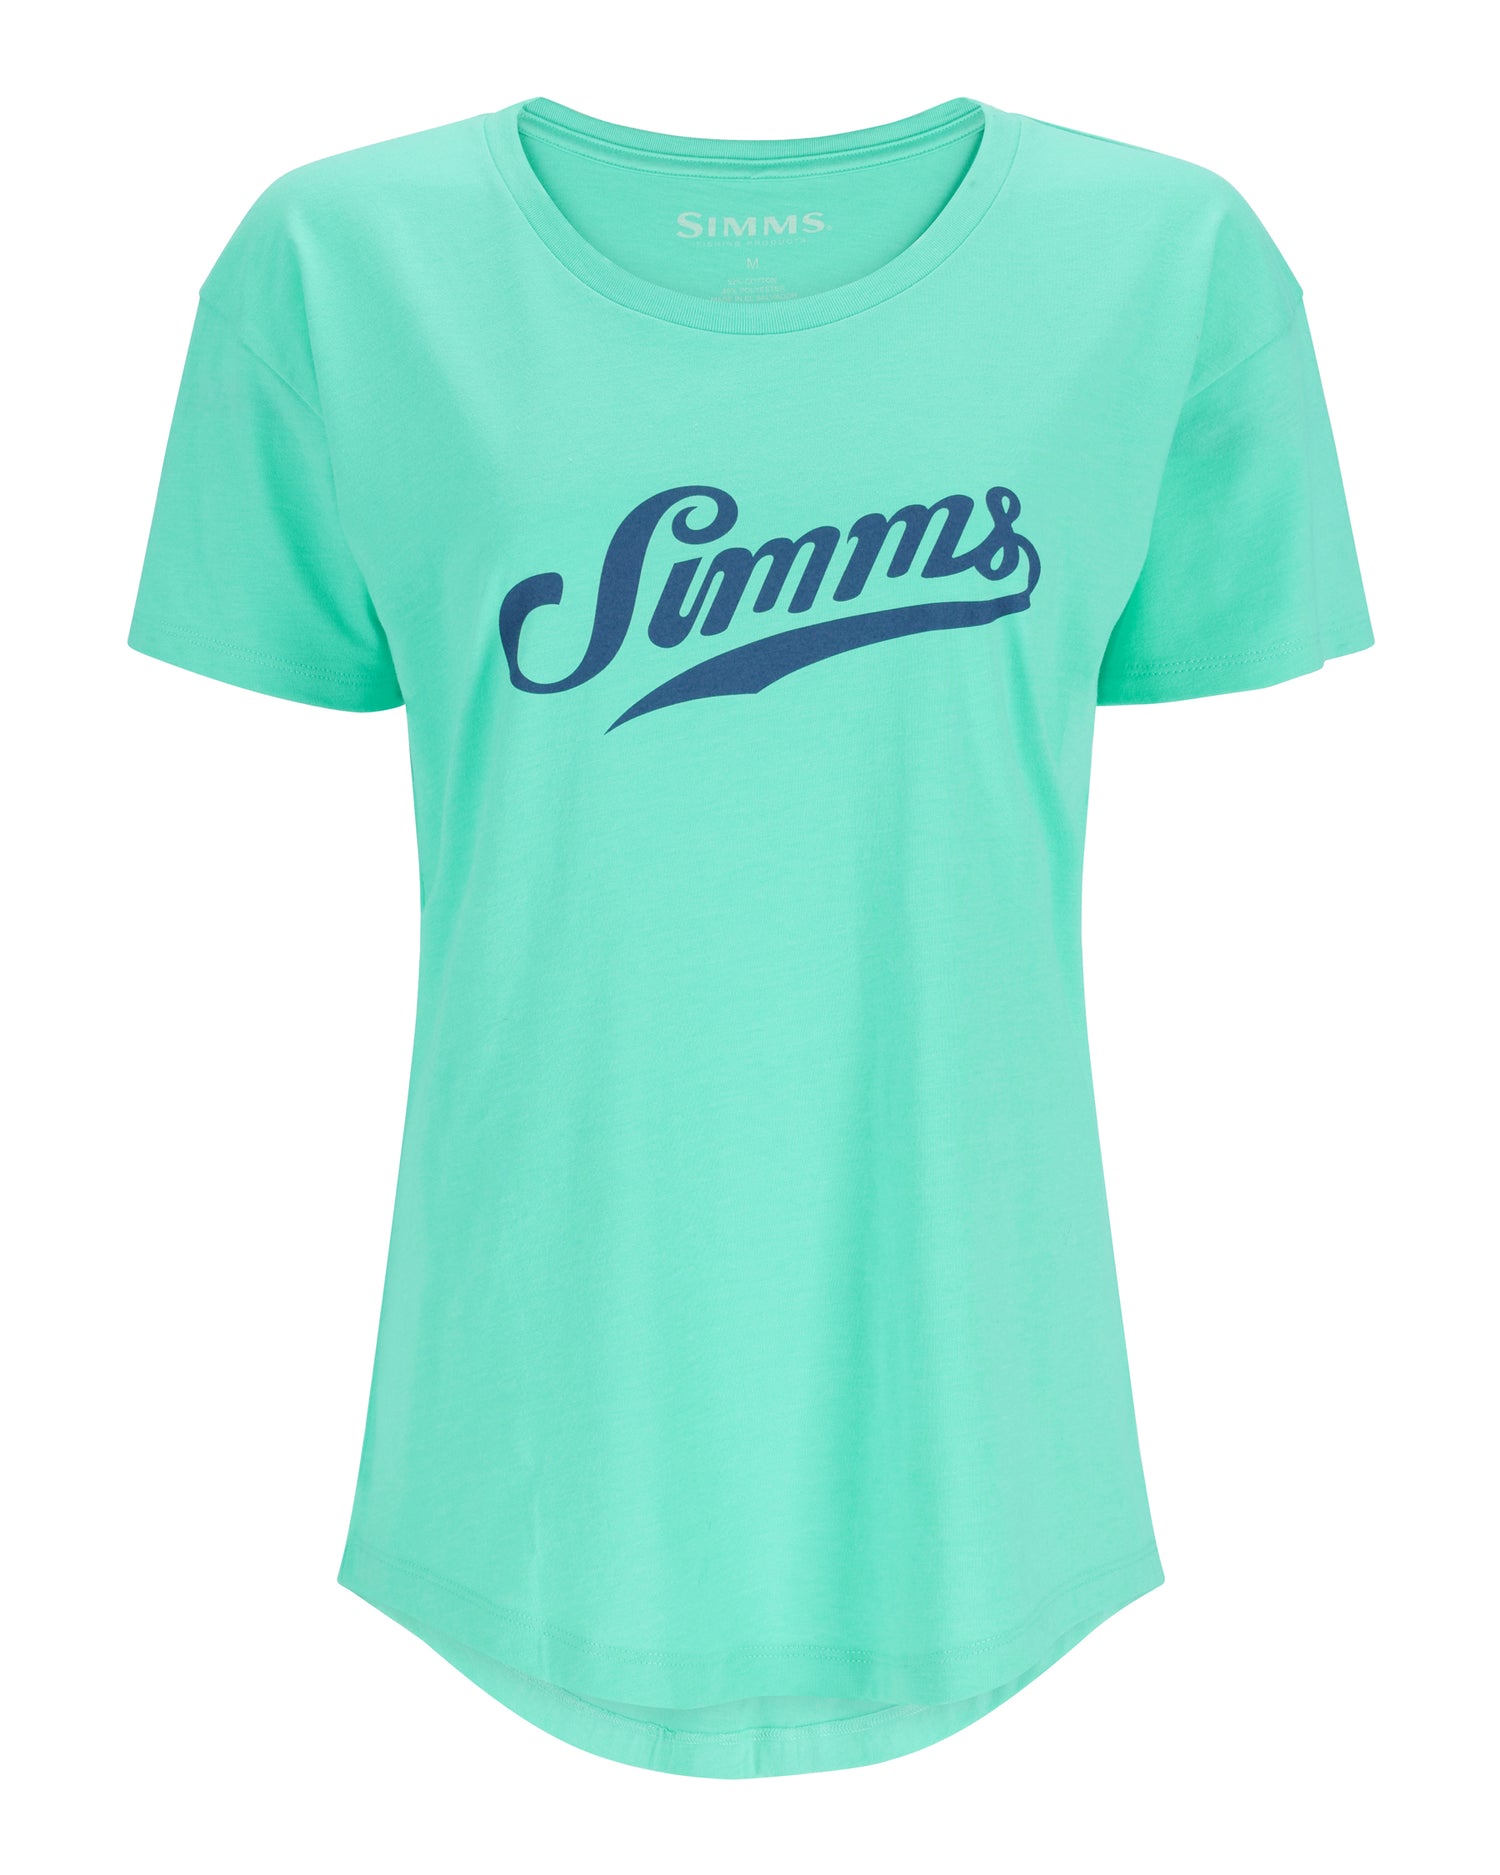 13819-459-simms-script-t-shirt-Mannequin-s23-front